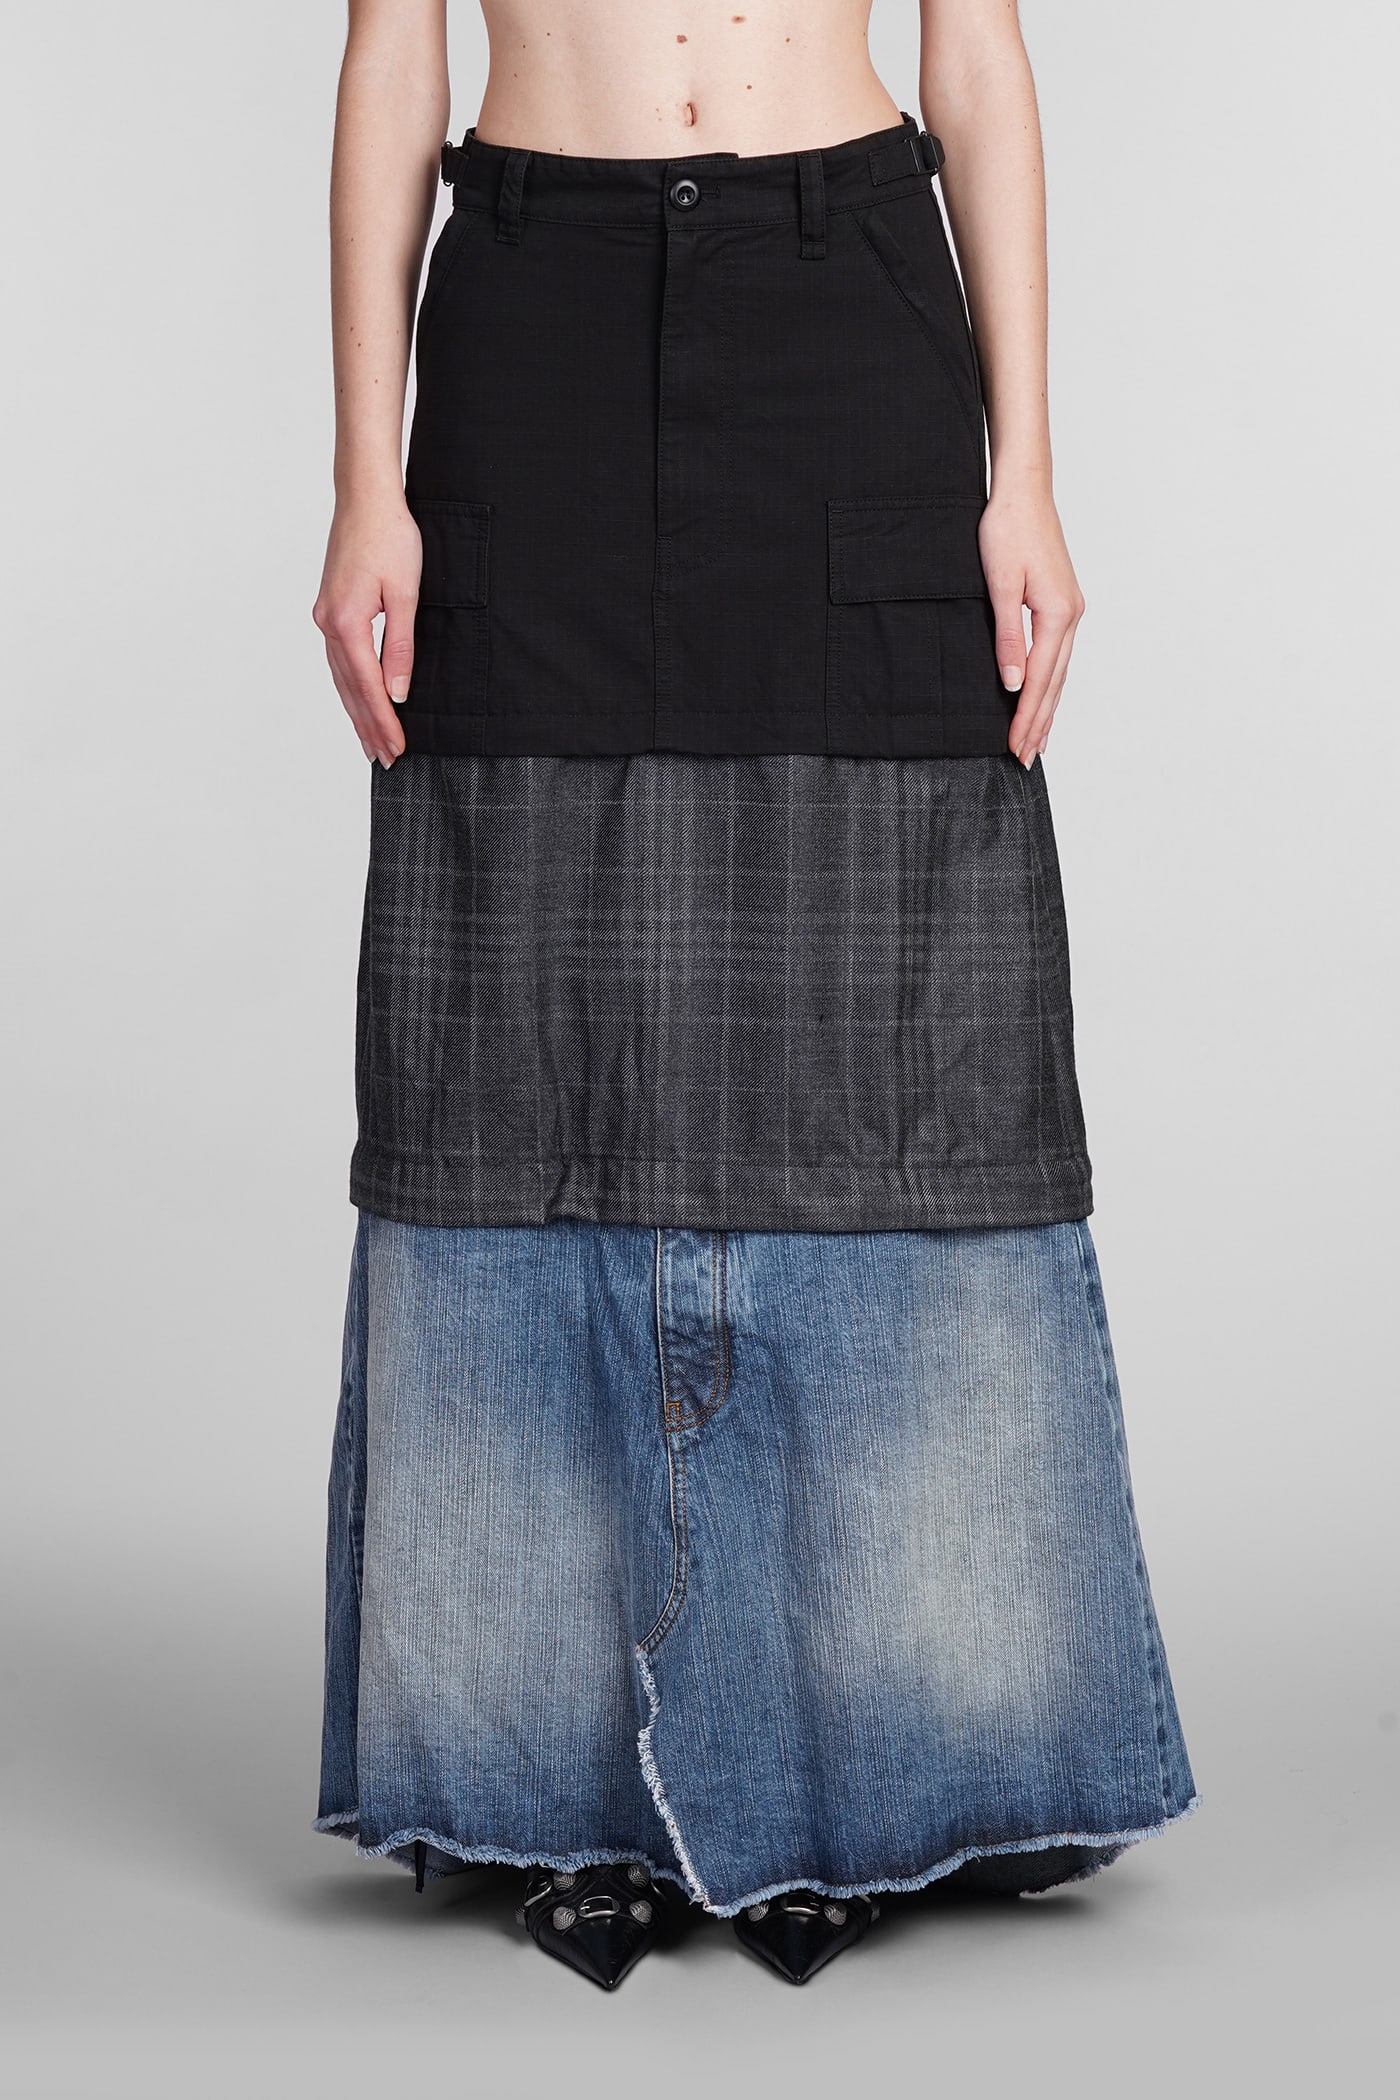 Balenciaga Skirt In Black Cotton